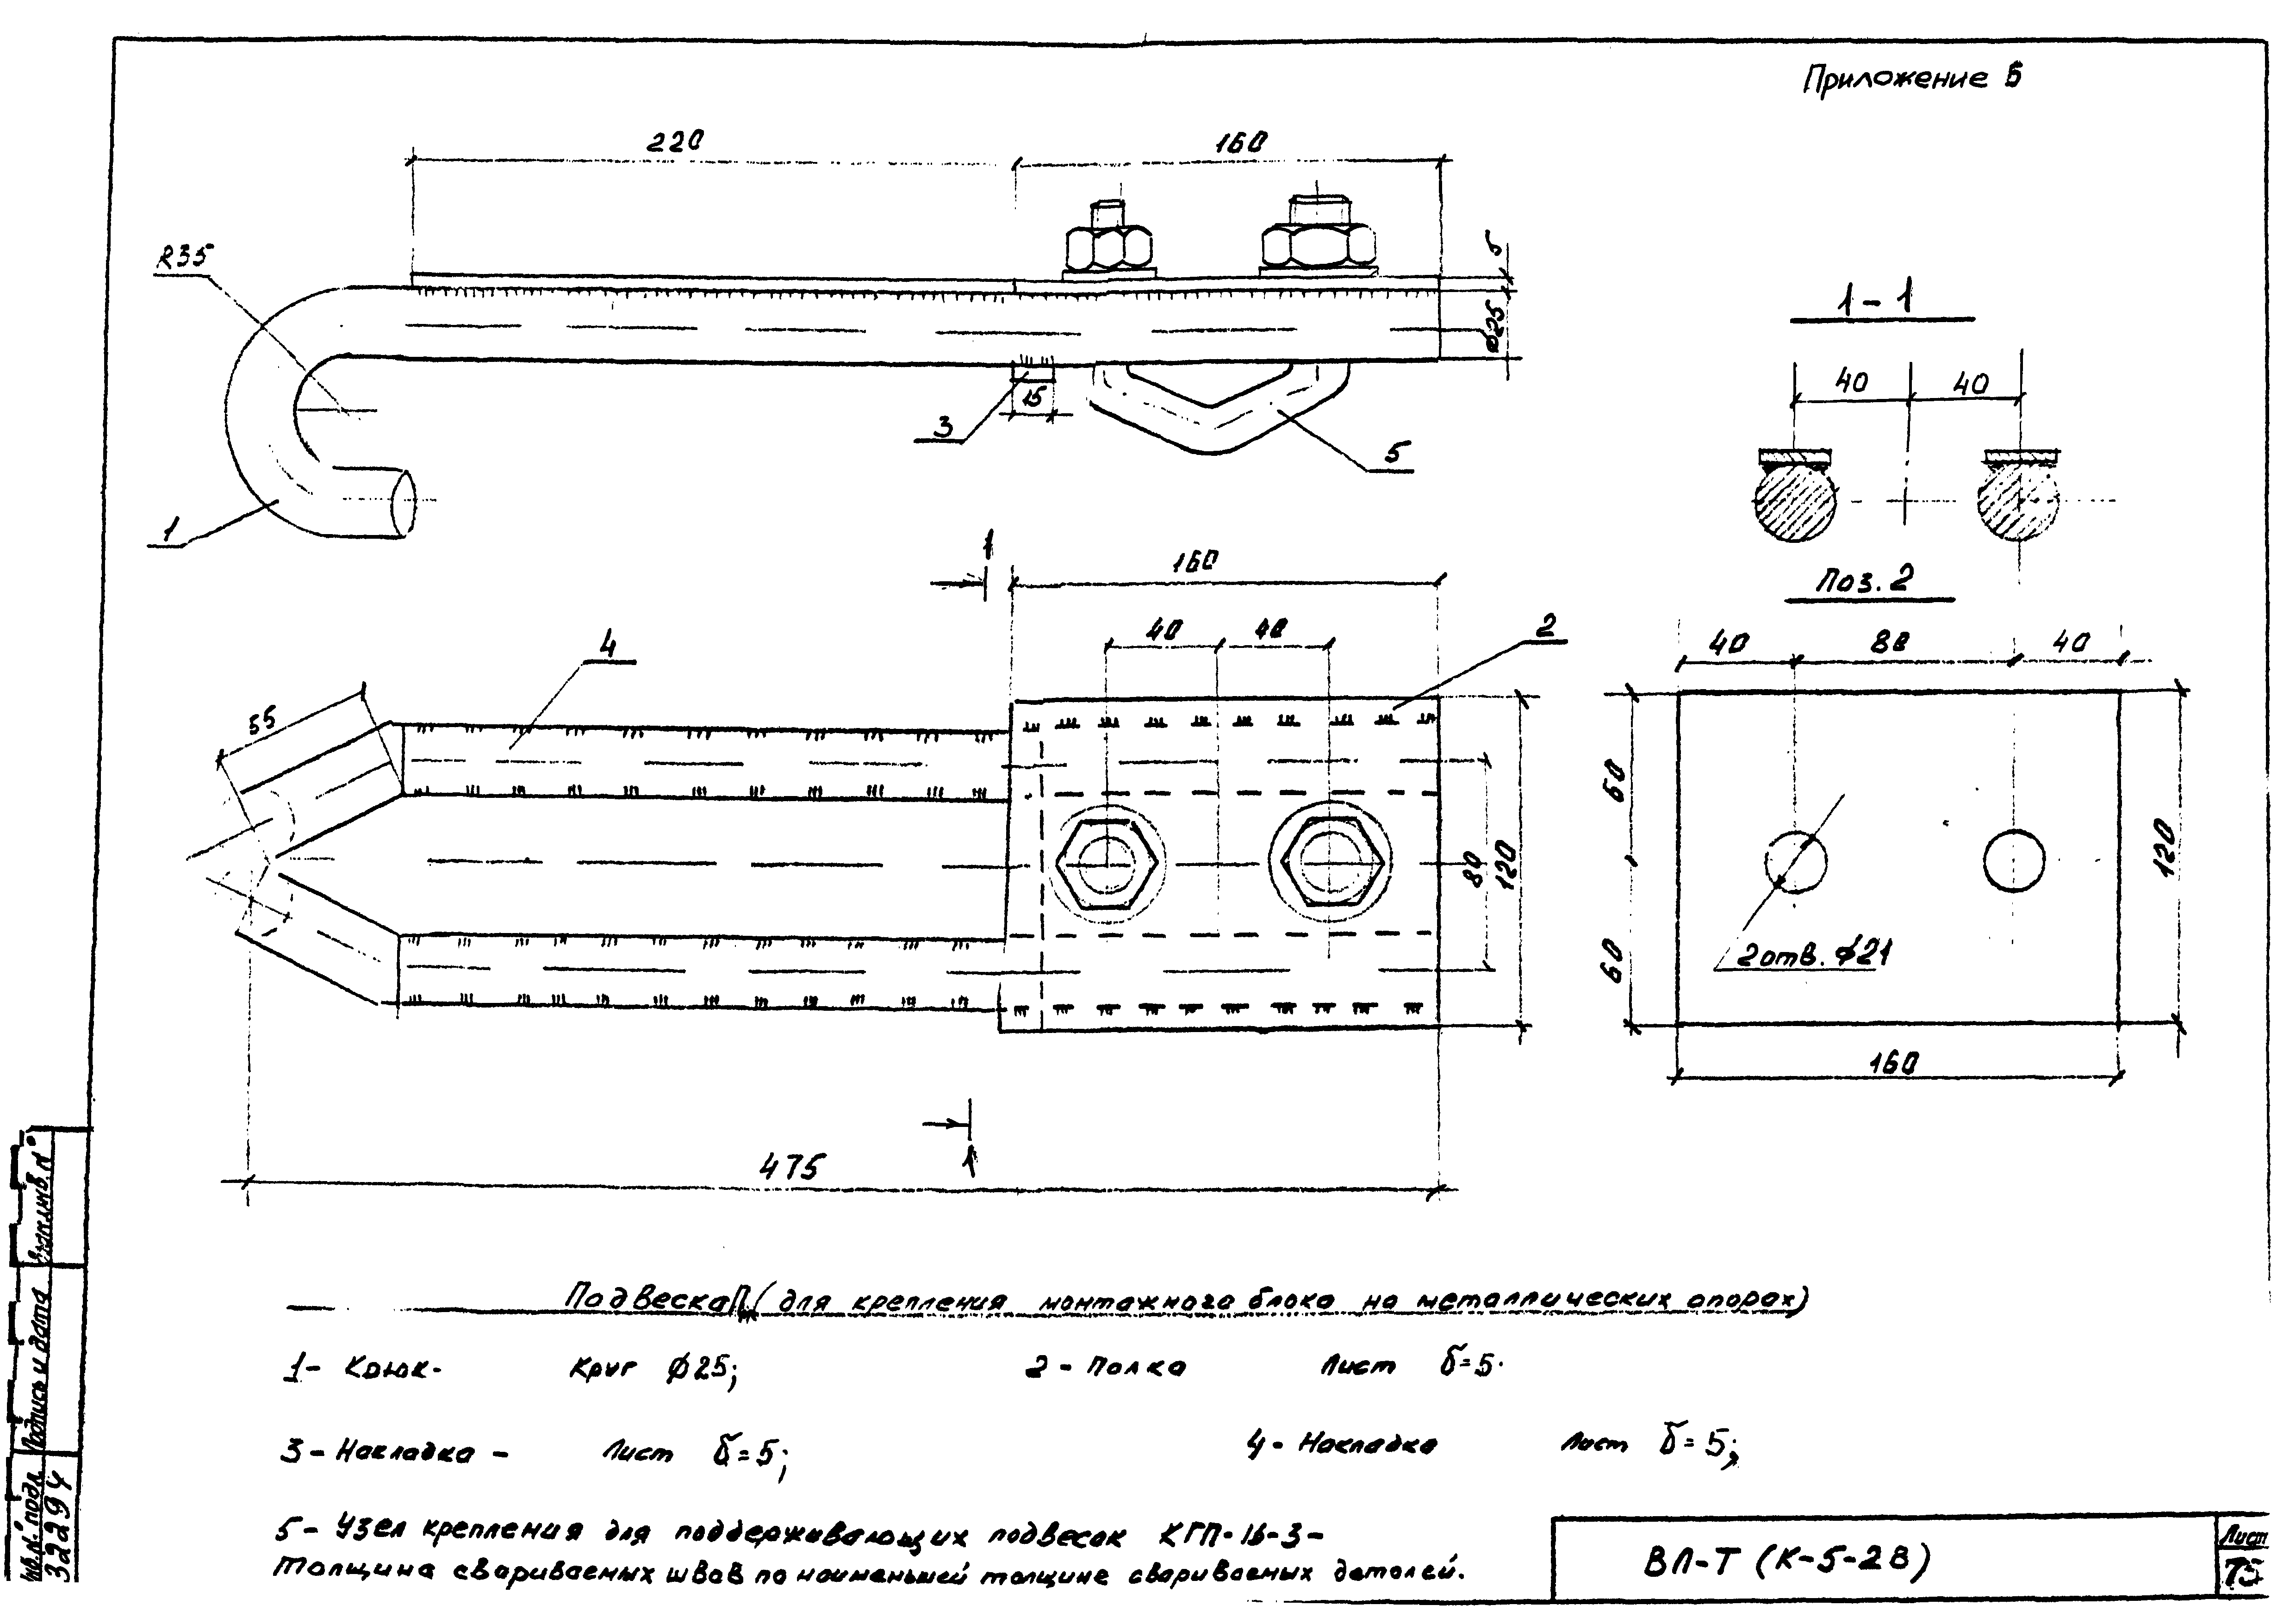 Технологическая карта К-5-28-6